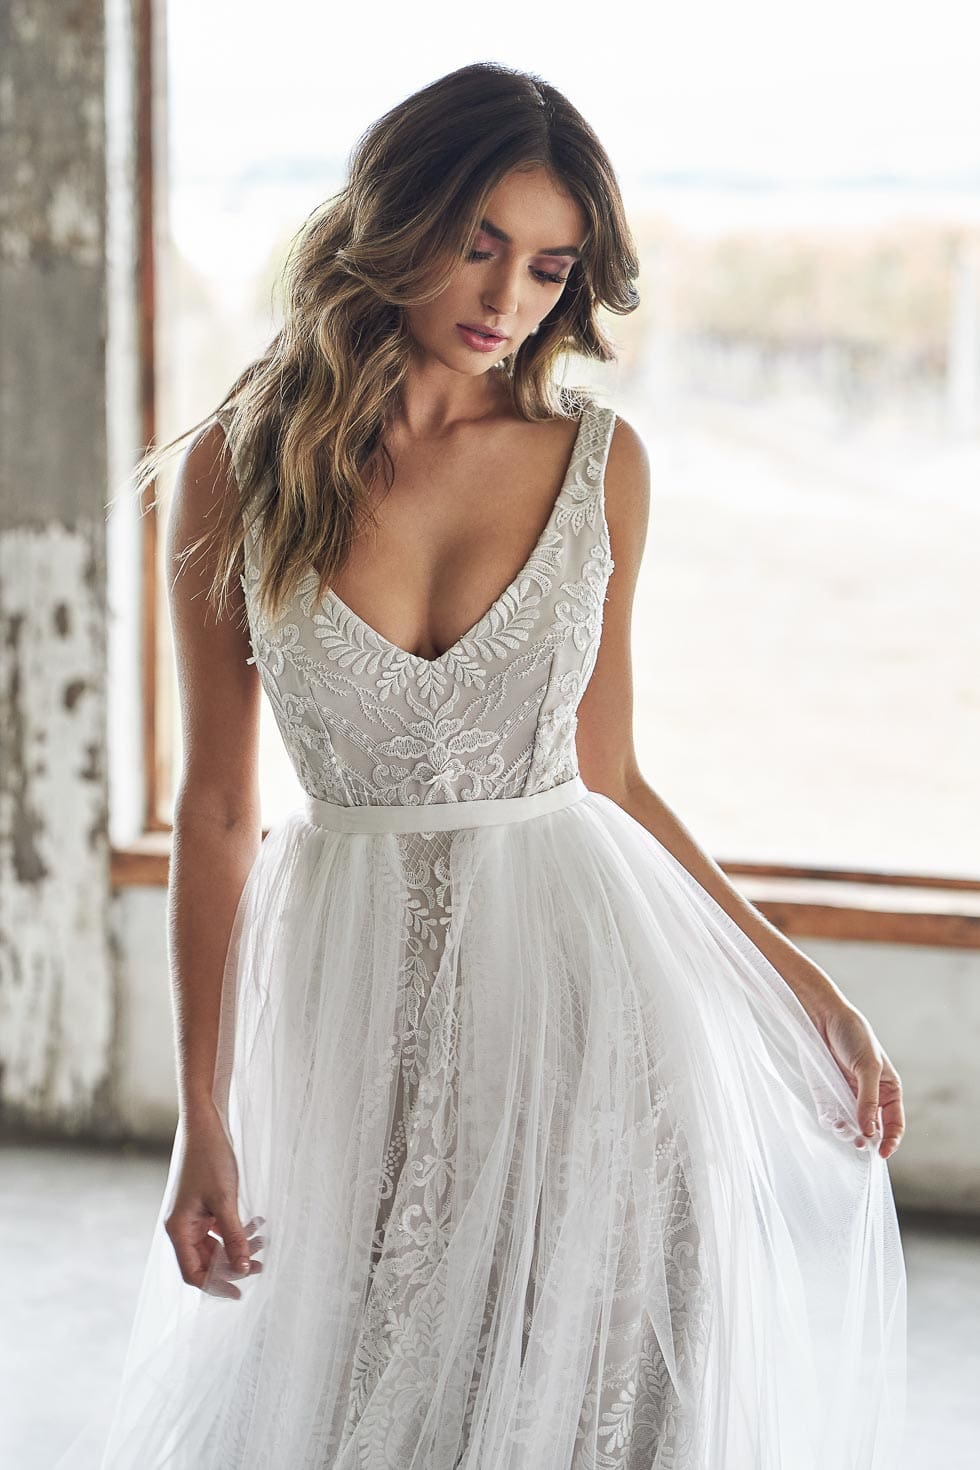 ♥NEU Hochzeitskleid in Weiß+NEU+SOFORT+W025♥ Größe 34-54 Brautkleid 